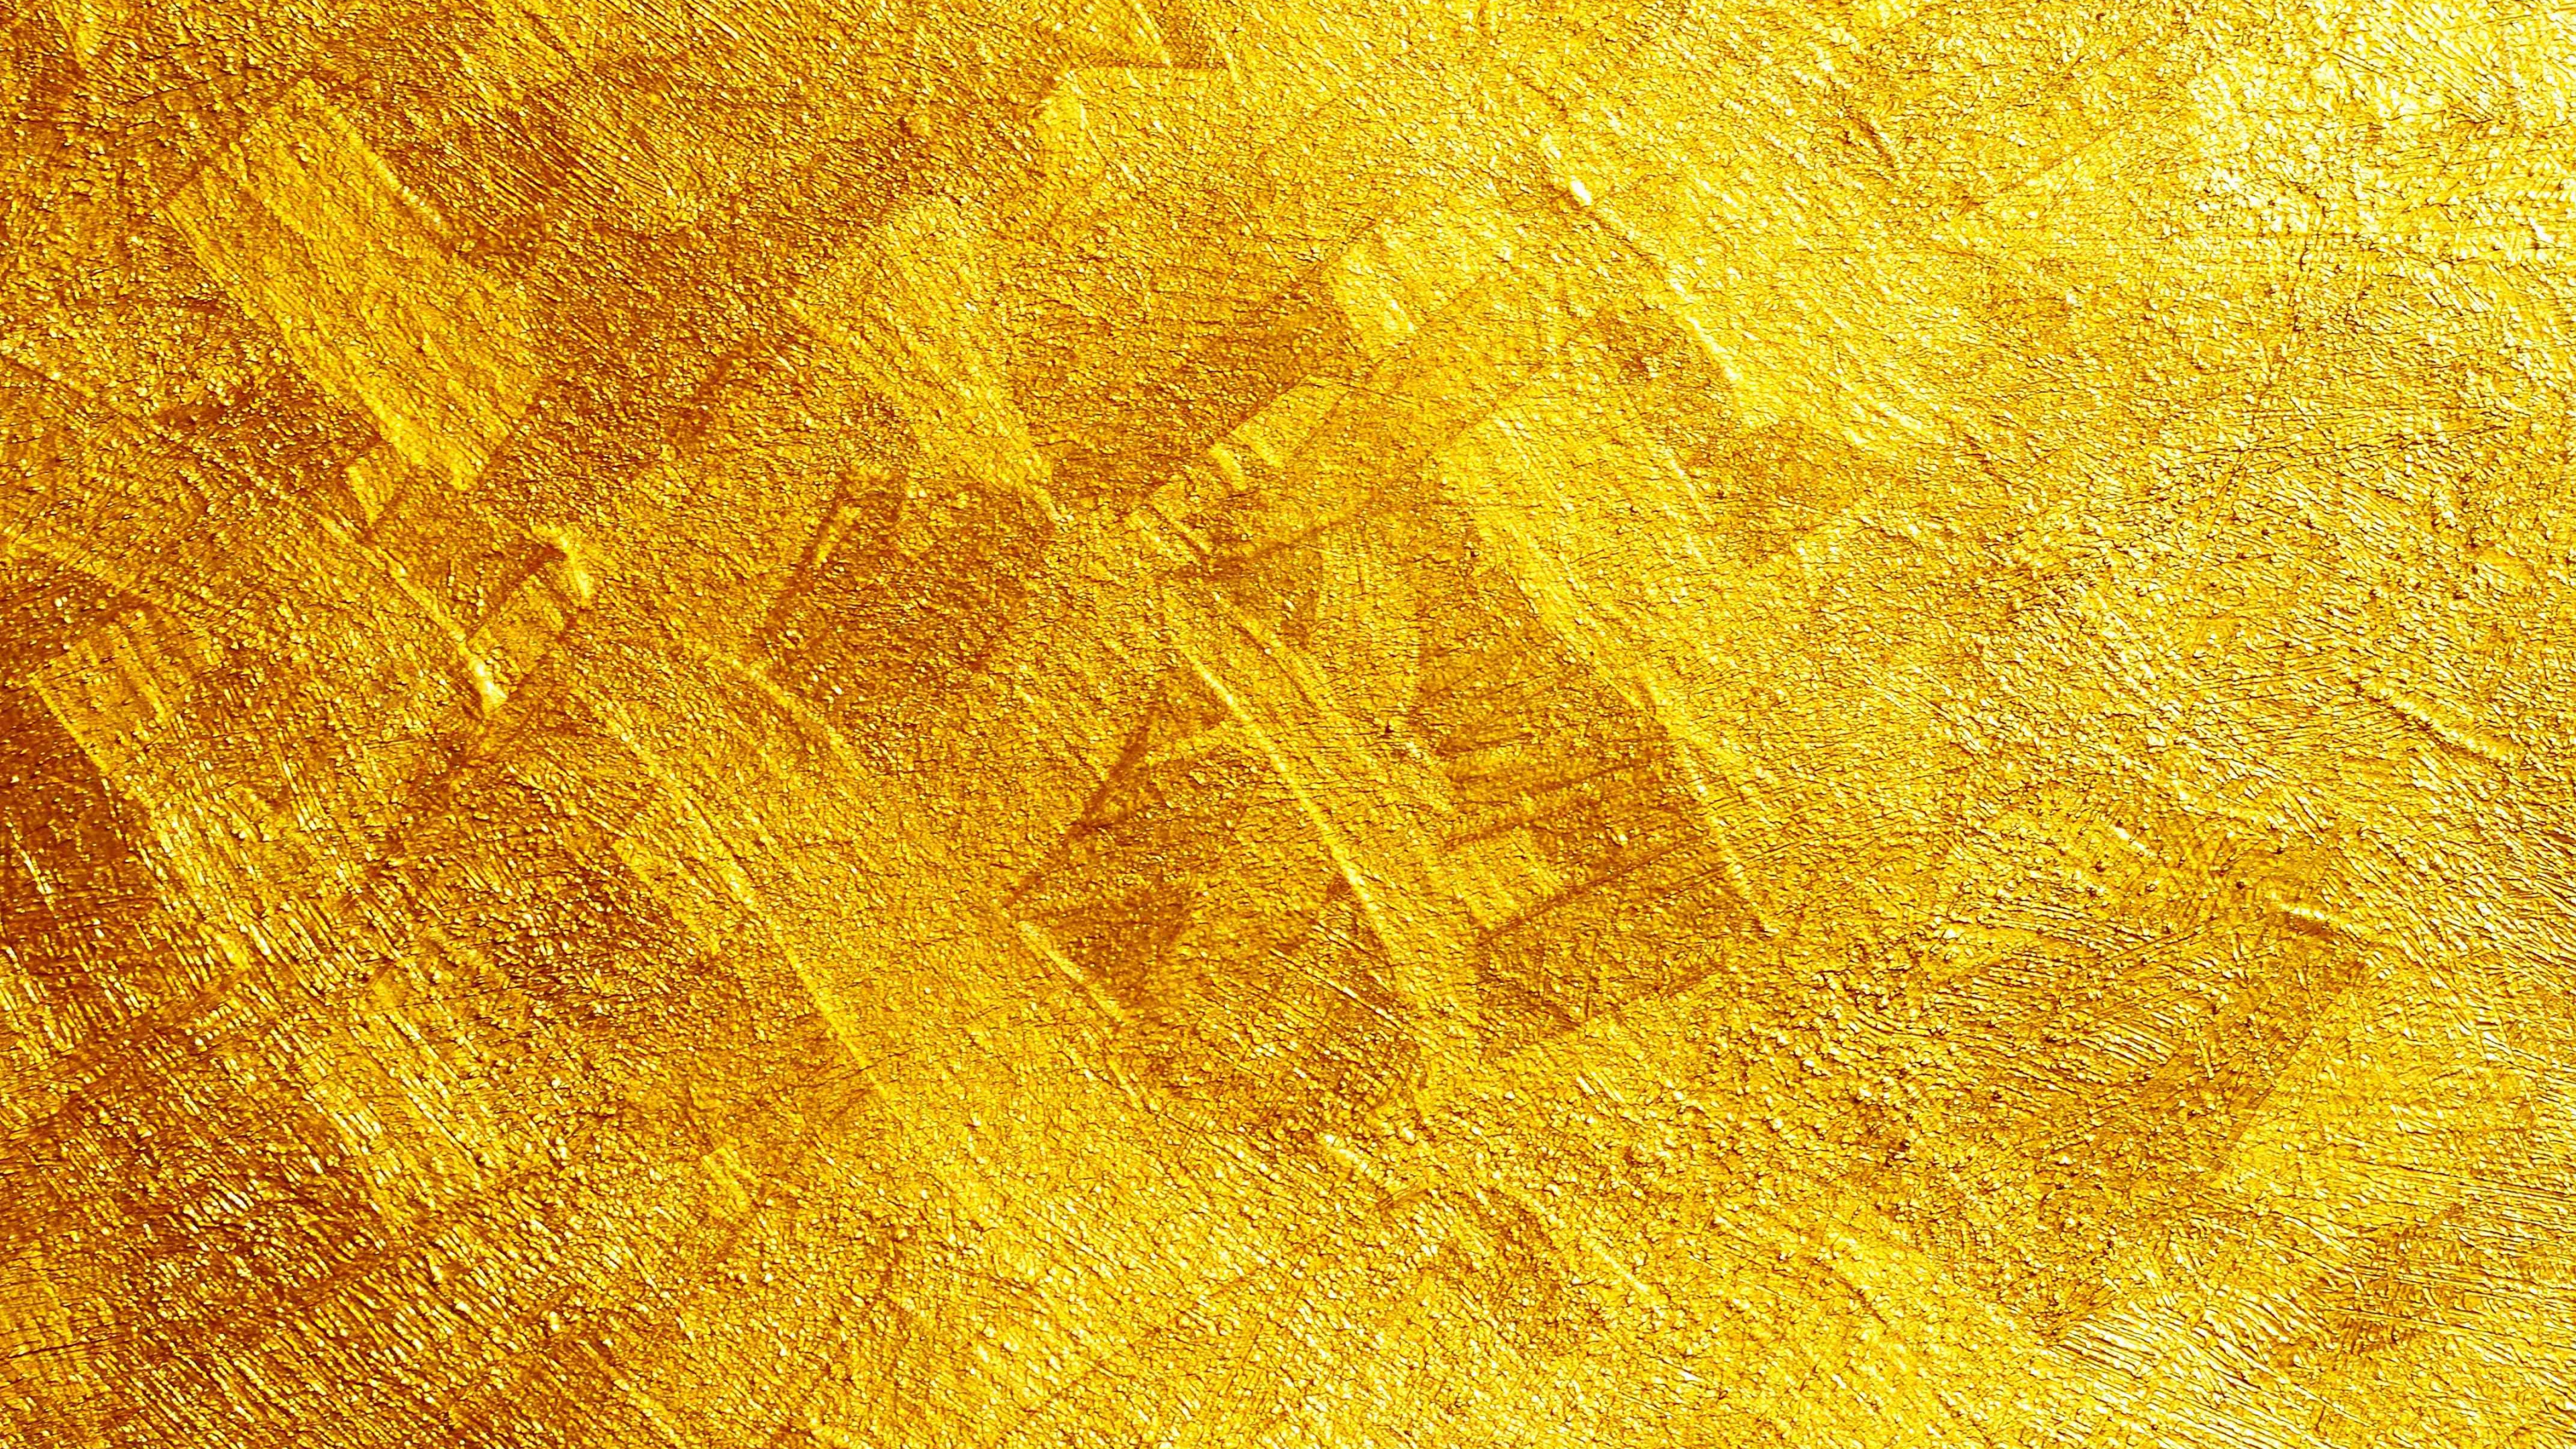 Alfombra Amarilla y Marrón. Wallpaper in 3840x2160 Resolution